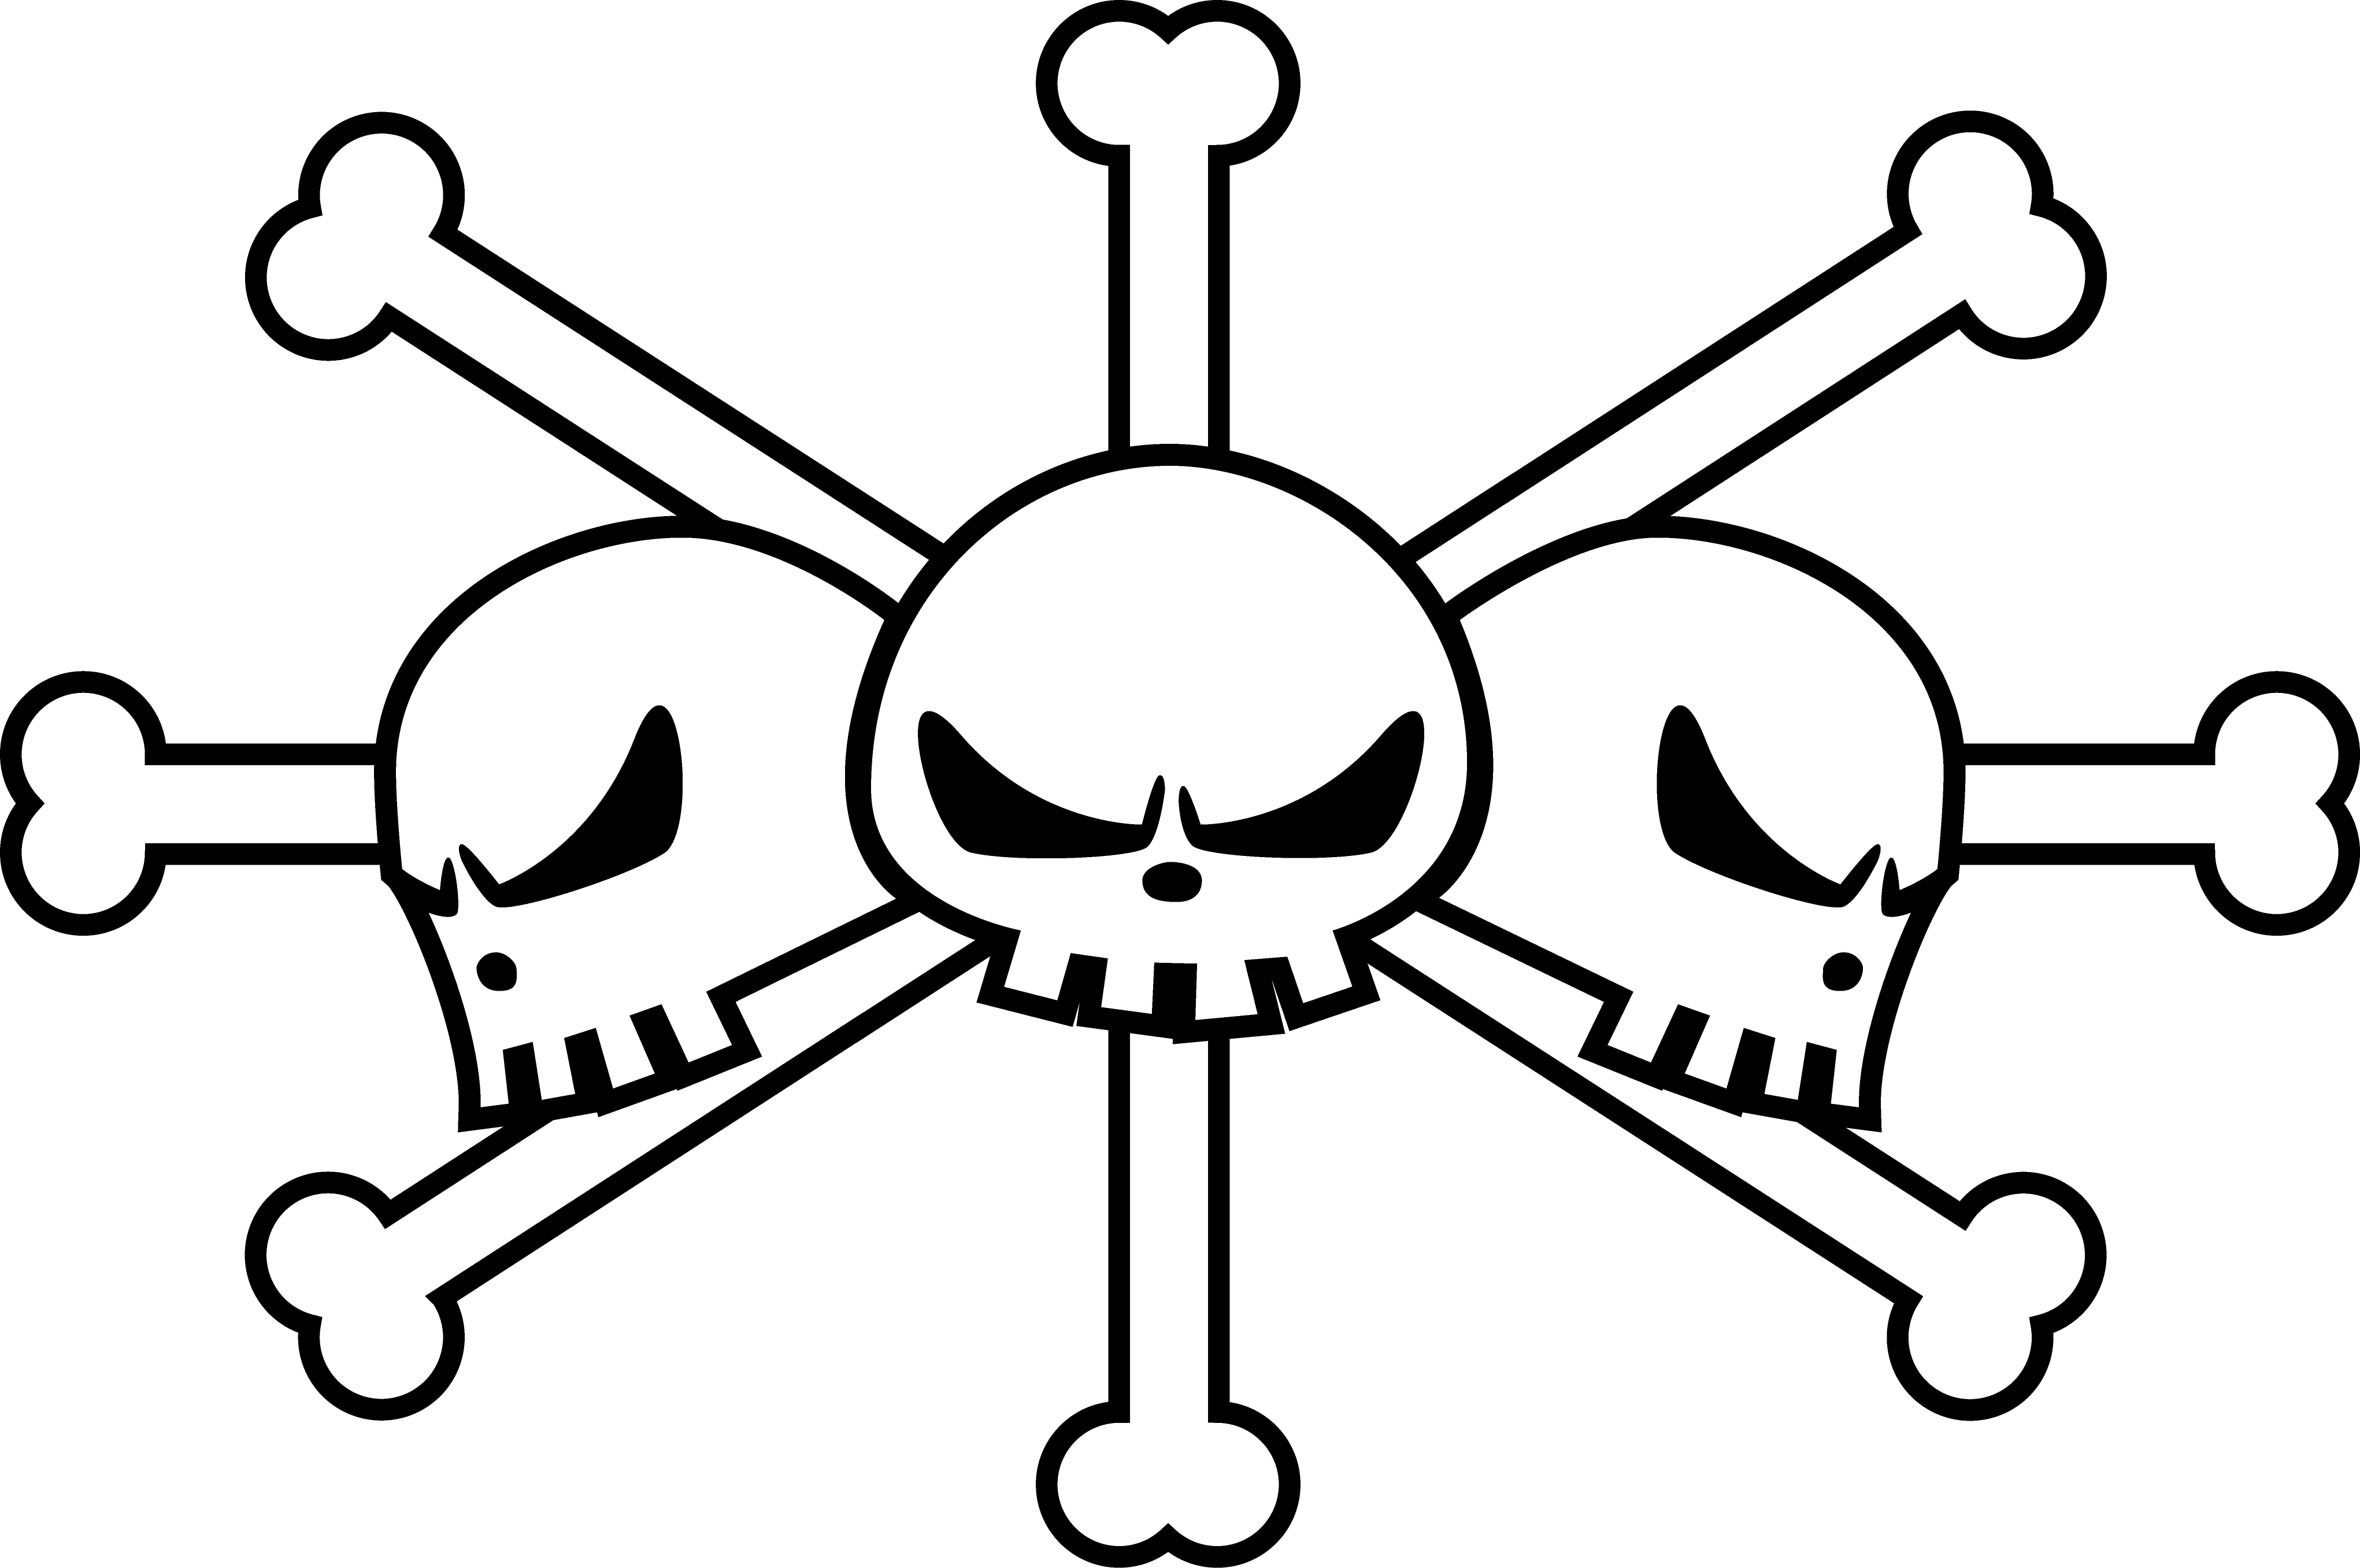 Blackbeard Pirate Flag By Wolowizzard - One Piece Jolly Roger.